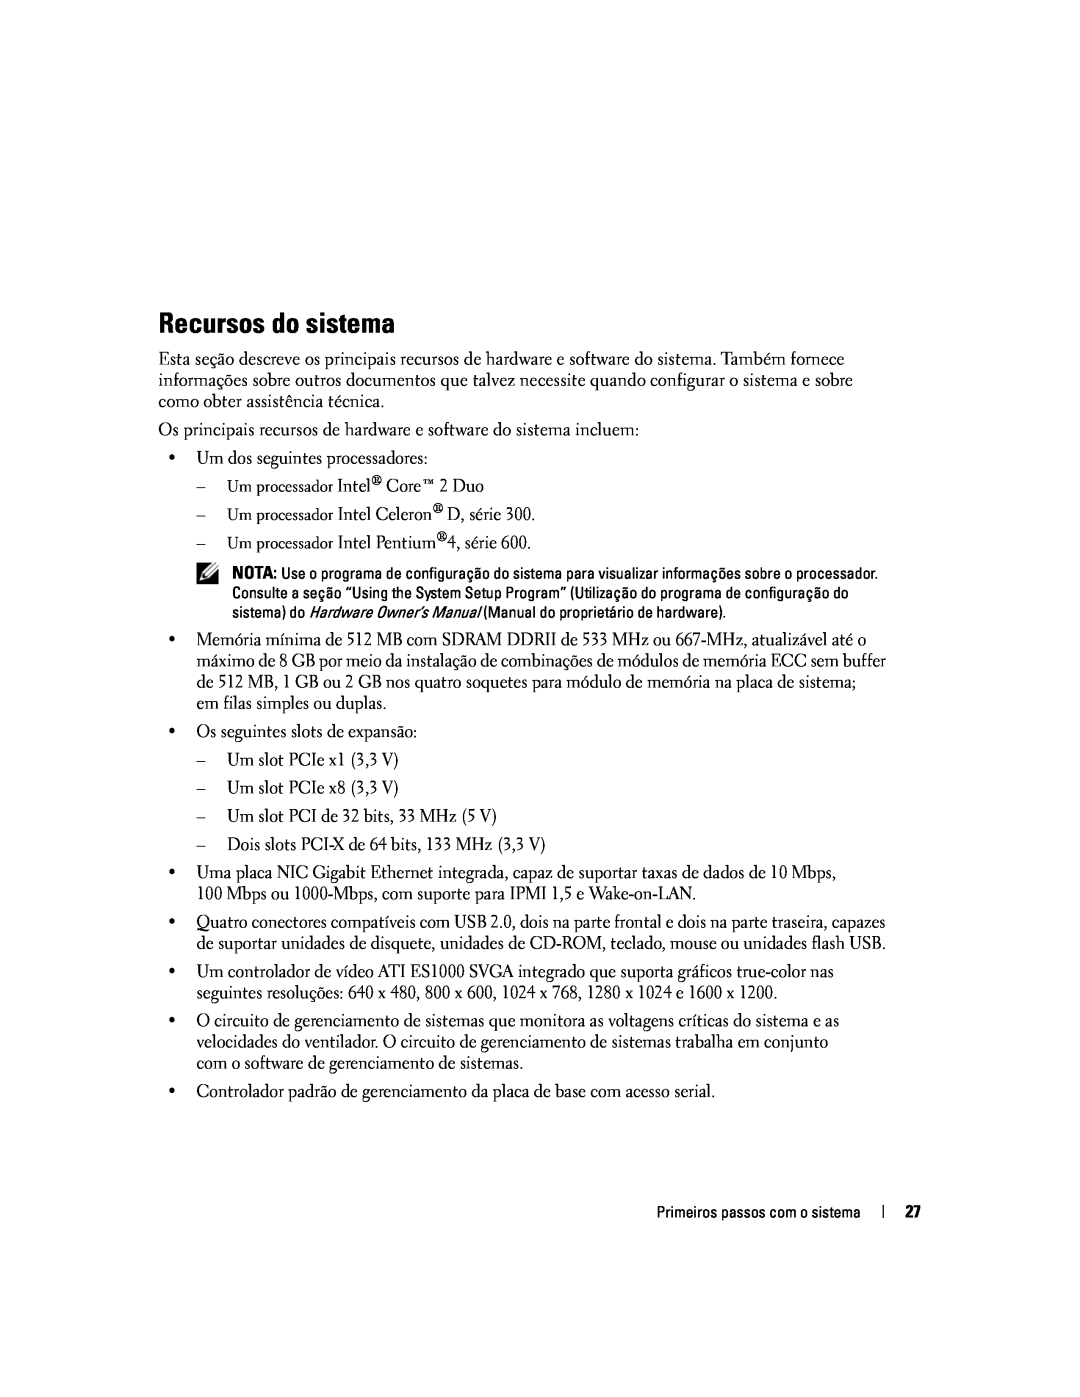 Dell MVT01 manual Recursos do sistema 